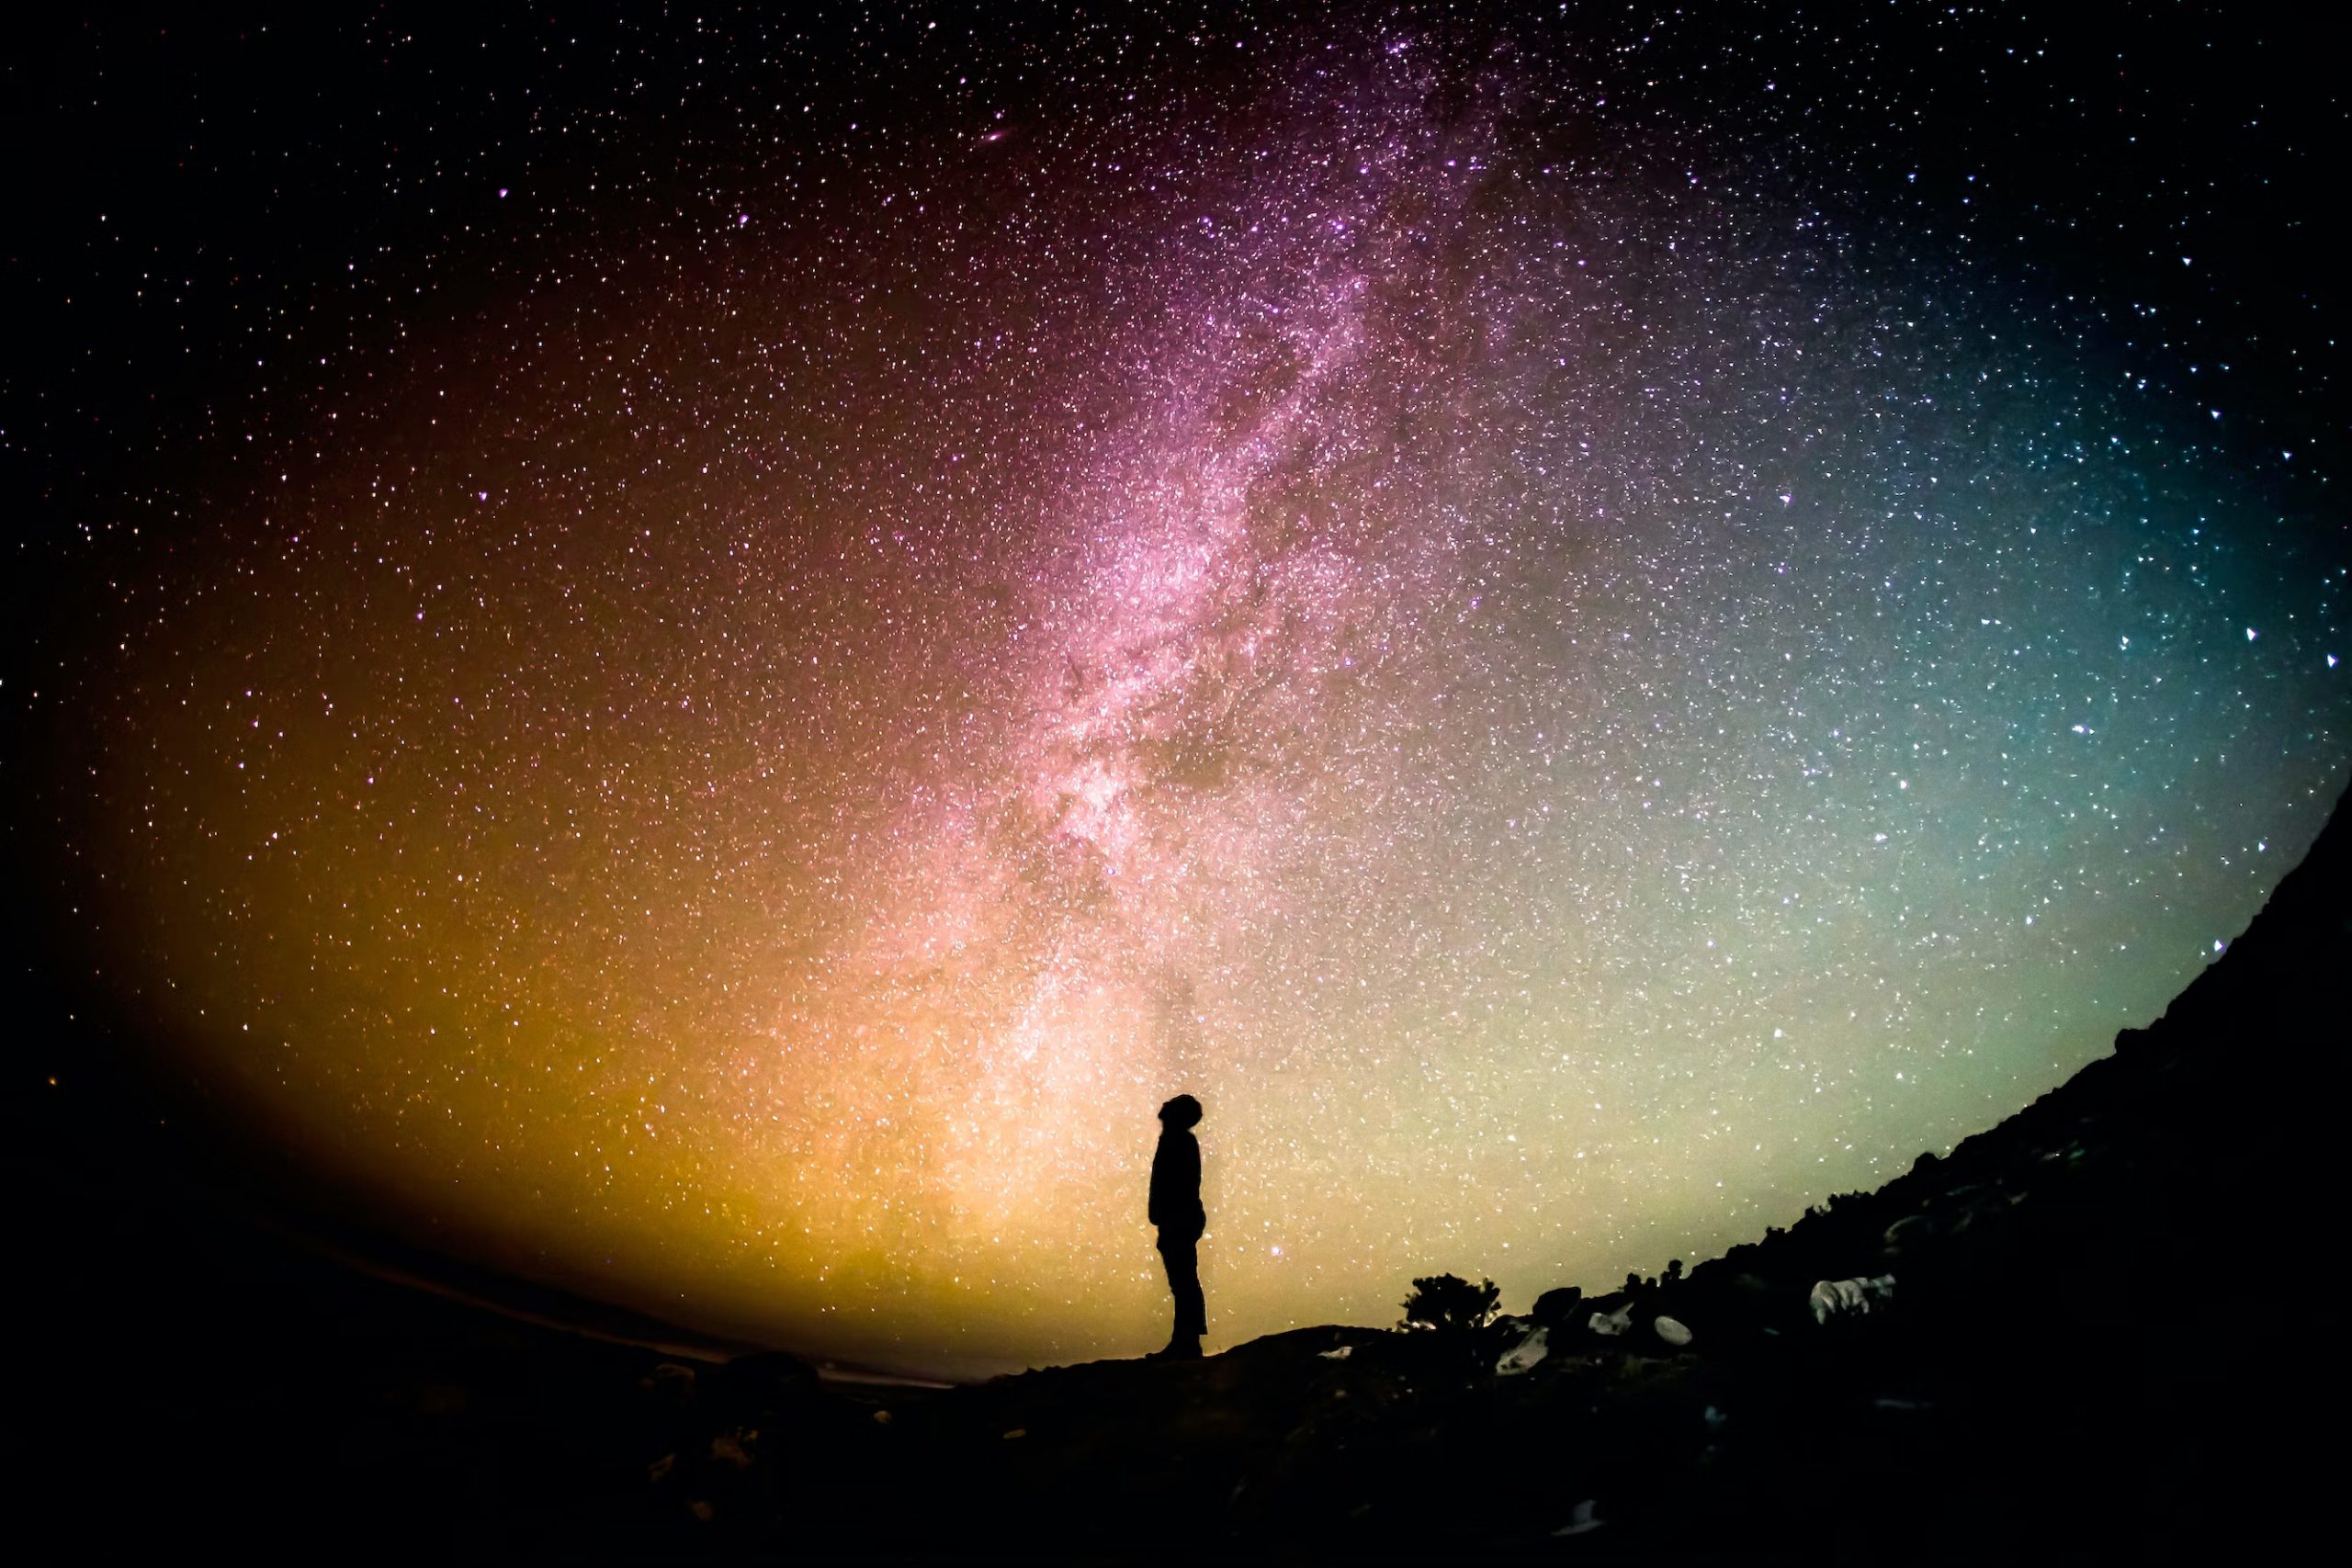 La silhouette d'une personne observant le ciel nocturne. (Crédit: G. Rakozy)